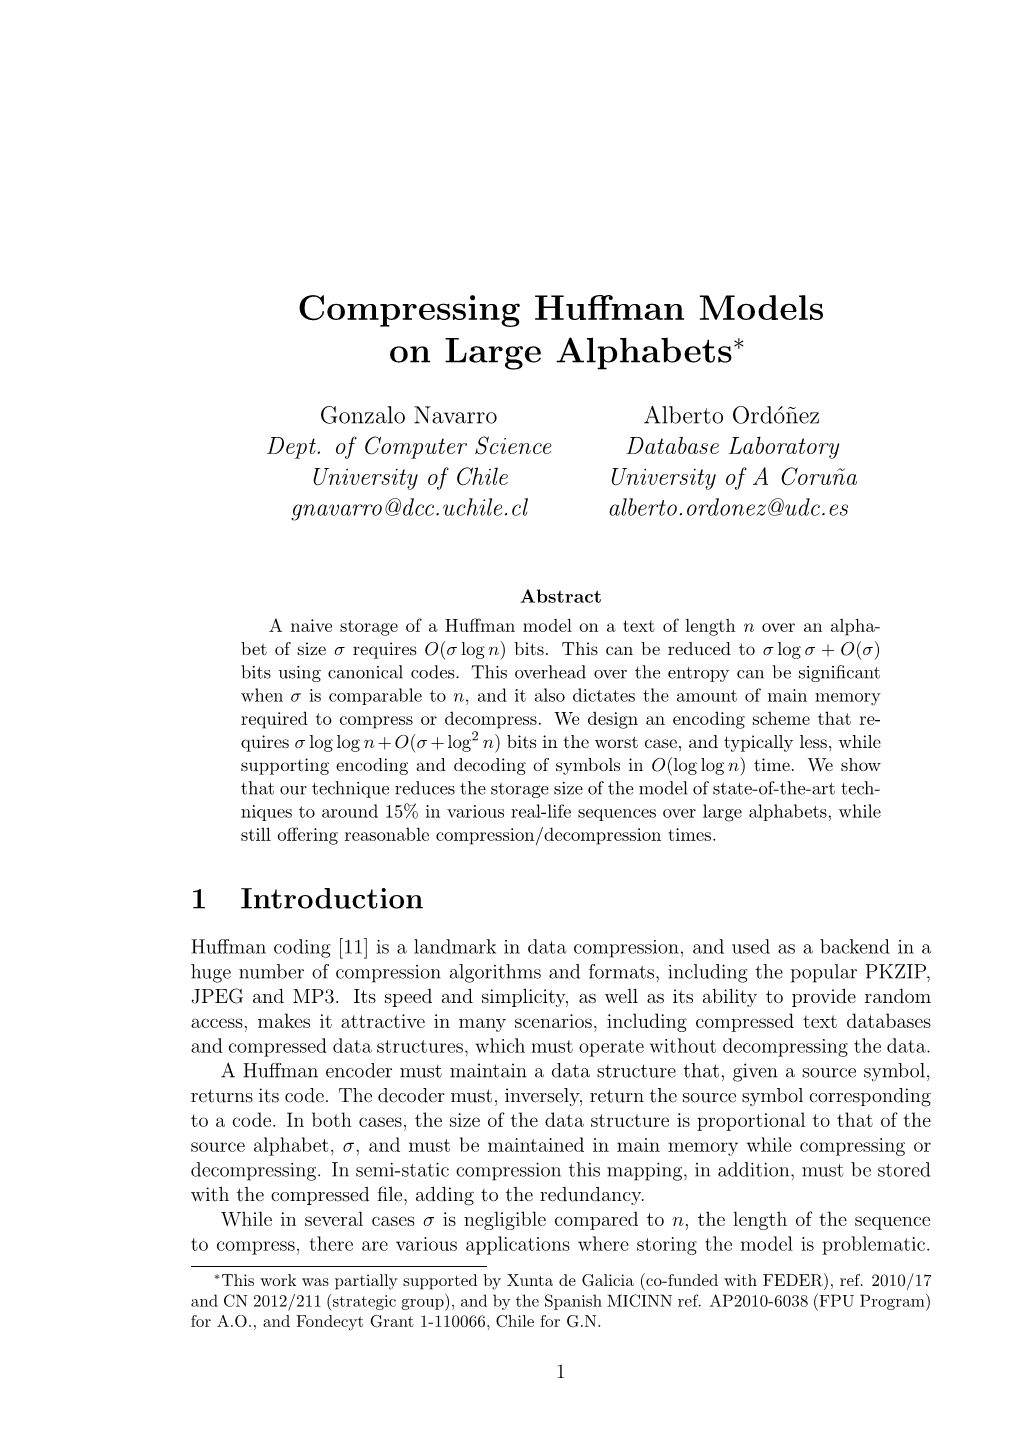 Compressing Huffman Models on Large Alphabets